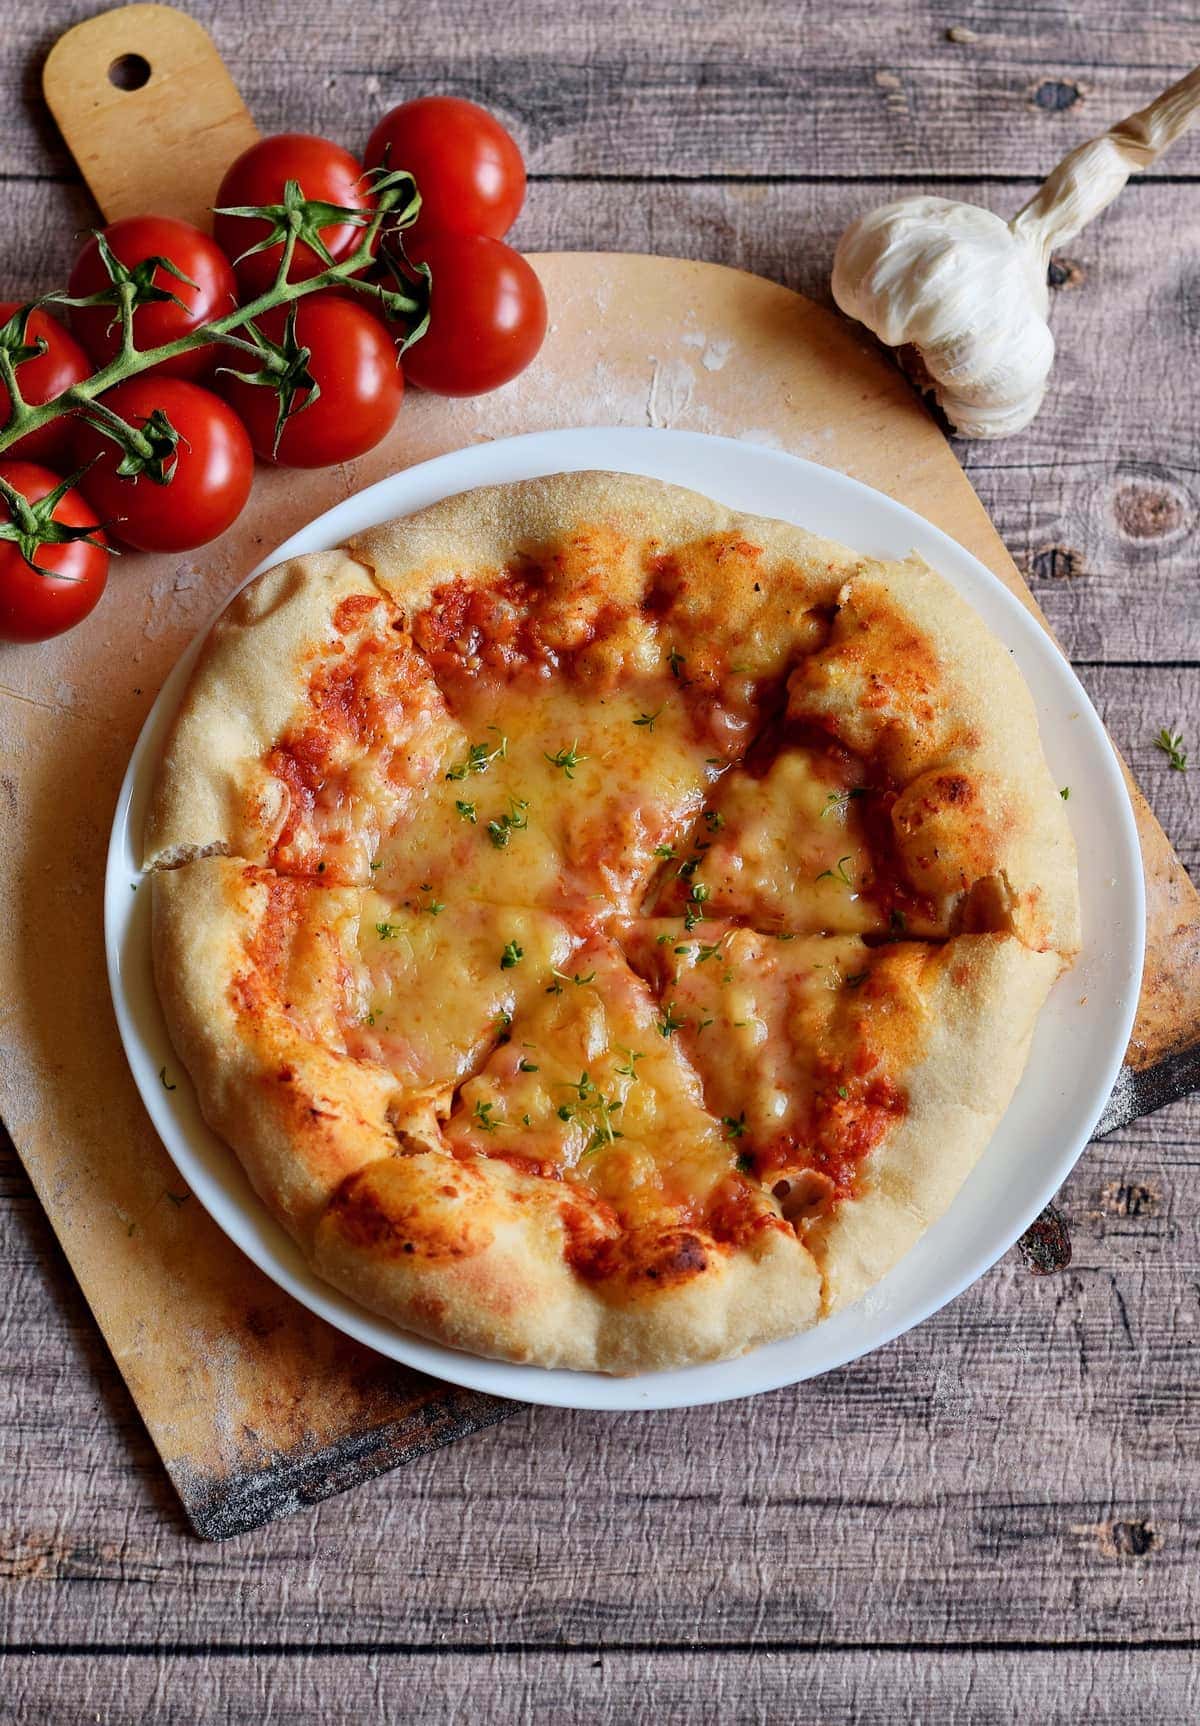 Aufnahme einer neapolitanischen Pizza mit Tomaten, Knoblauch und veganem Käse auf einem Teller